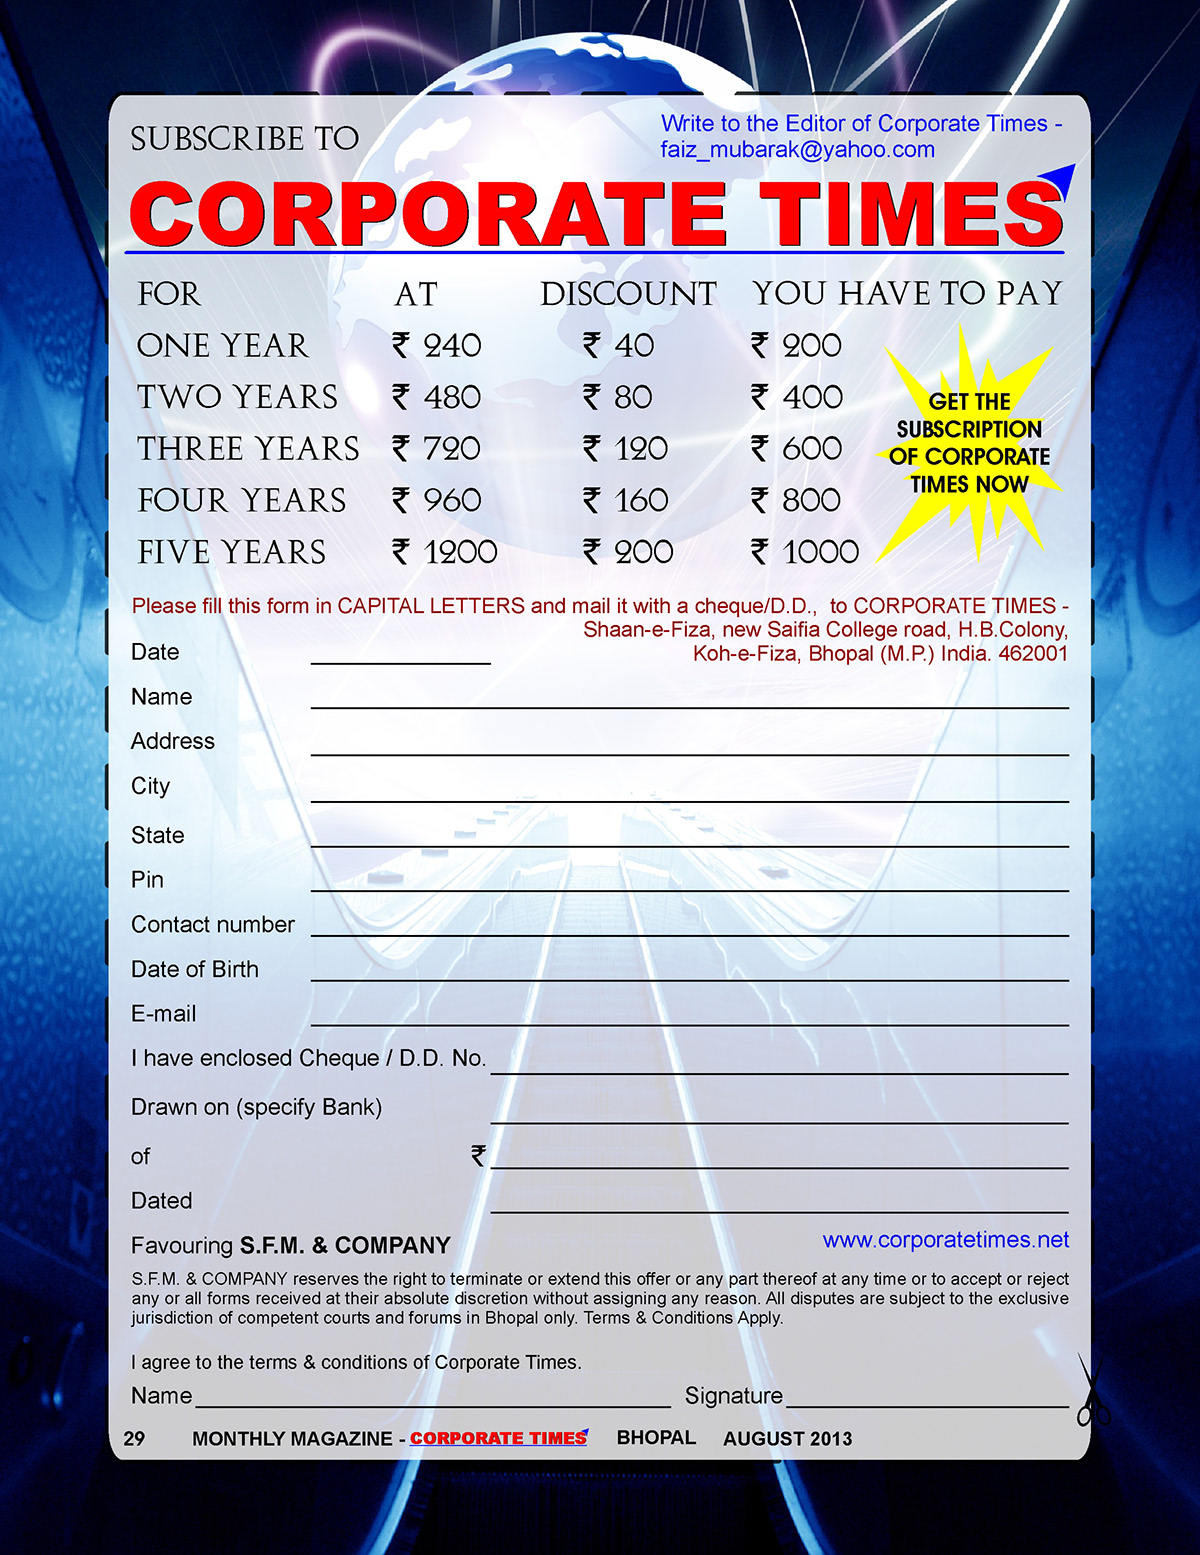 Corporate Times Magazine syed faiz mubarak S.F.M. & Company